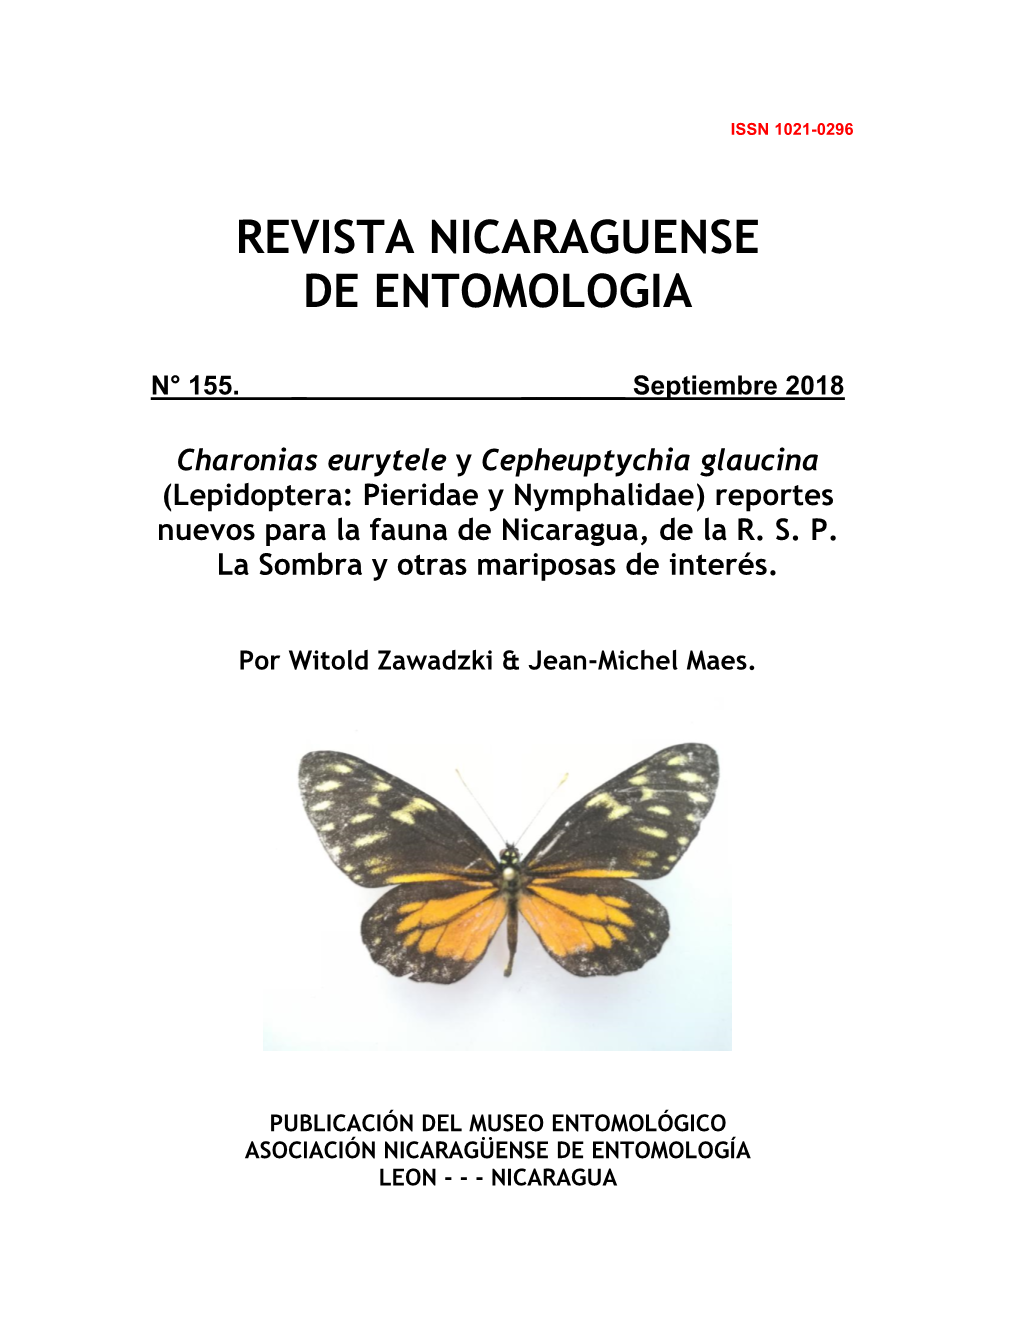 Charonias Eurytele Y Cepheuptychia Glaucina (Lepidoptera: Pieridae Y Nymphalidae) Reportes Nuevos Para La Fauna De Nicaragua, De La R